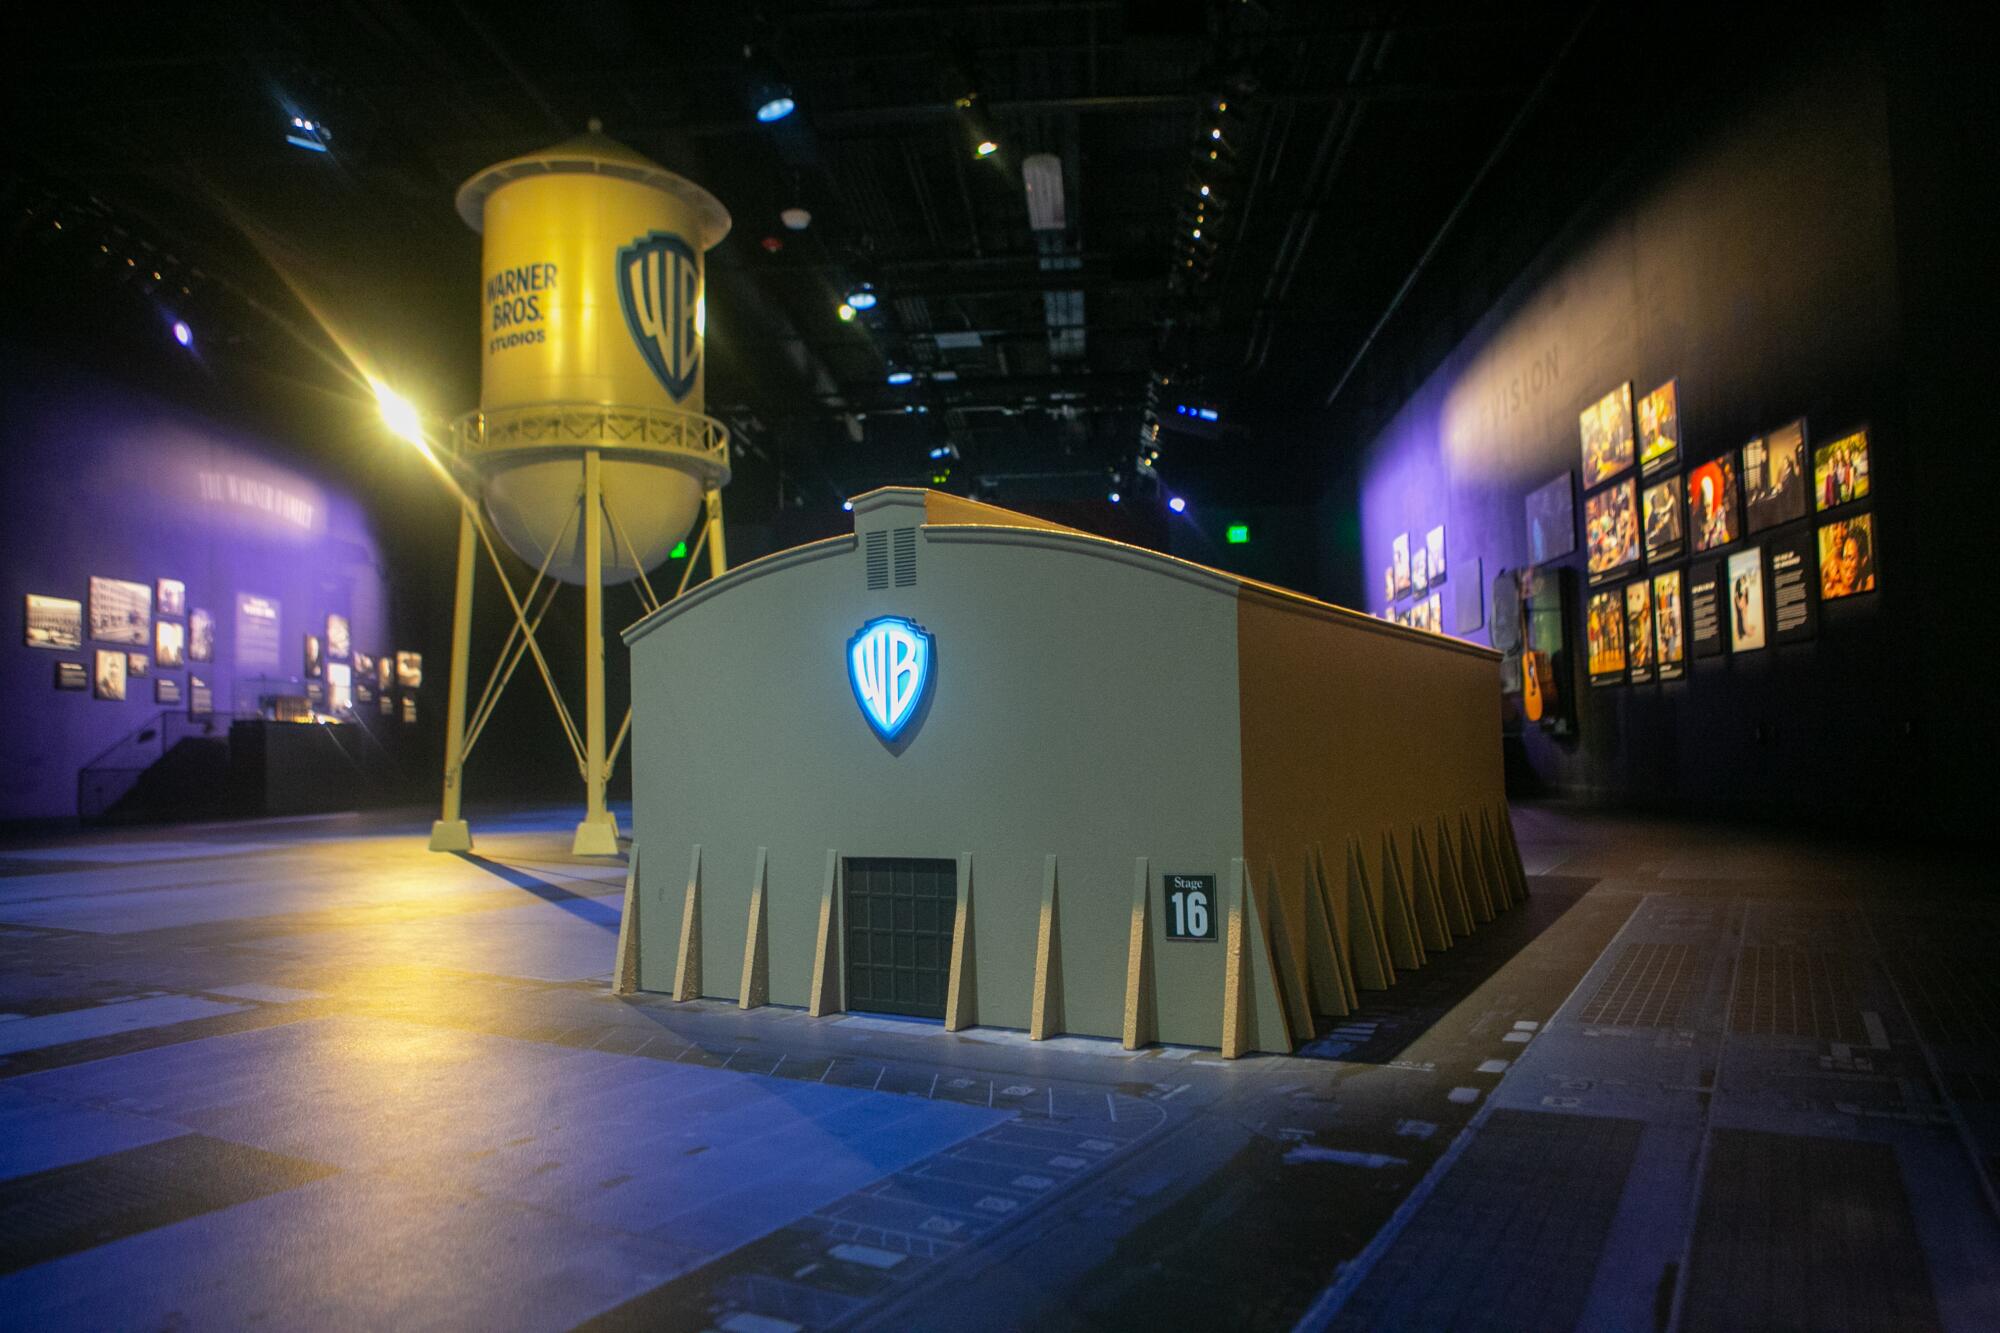 El nuevo centro de bienvenida de Warner Brothers ofrece a los visitantes una experiencia emocionante